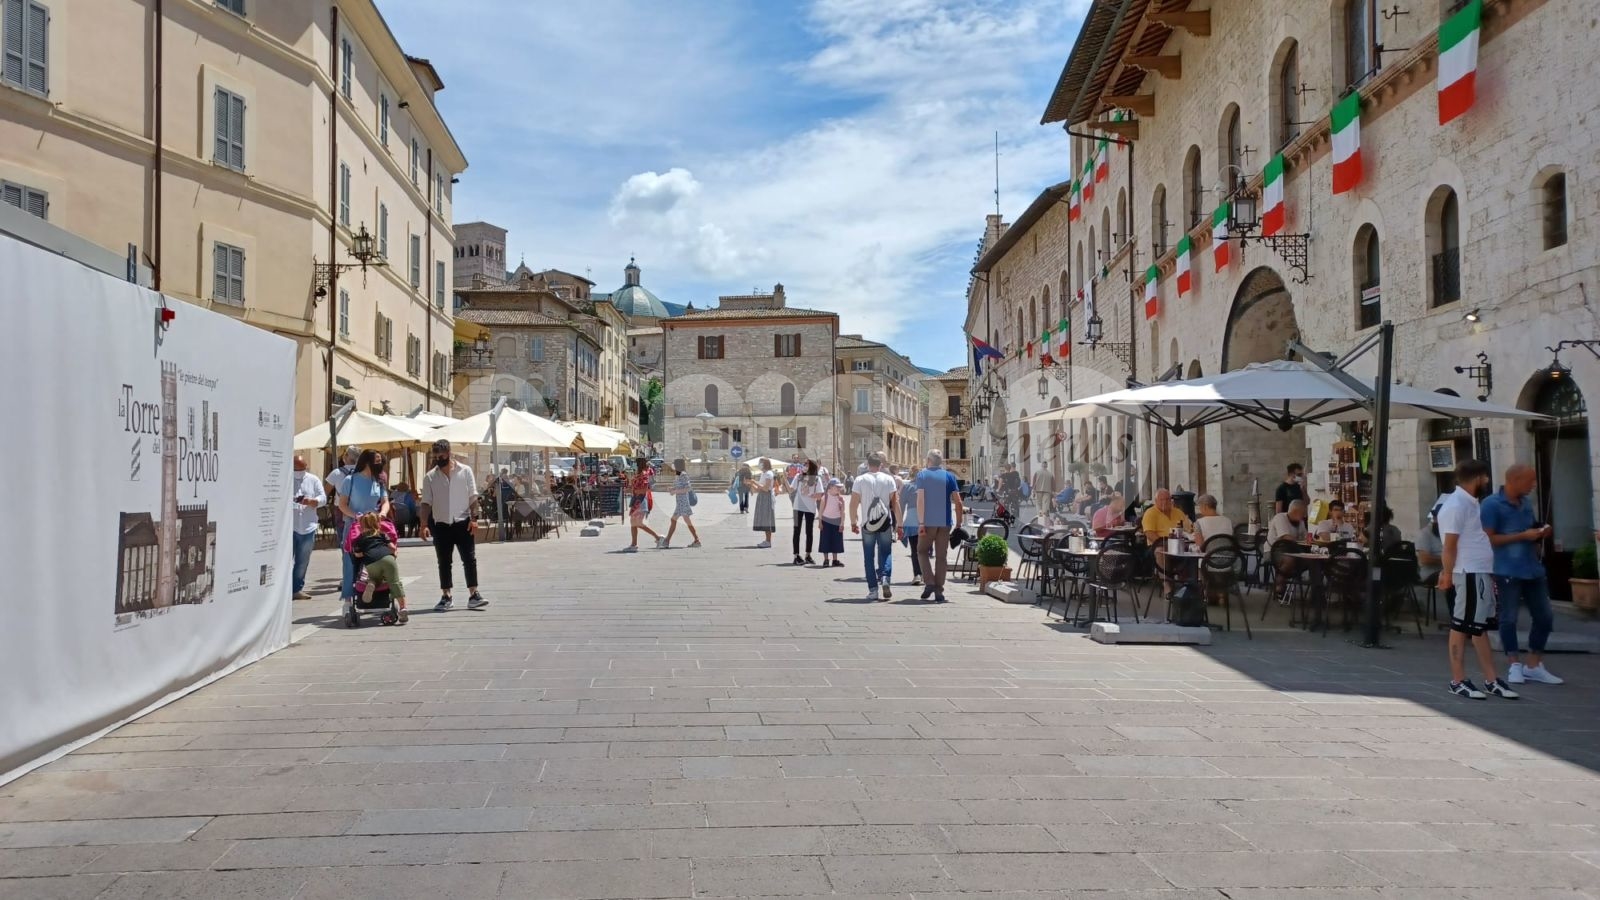 Turismo ad Assisi, il M5S: "Nel 2021 aumentata la permanenza, occasione per riposizionarsi"